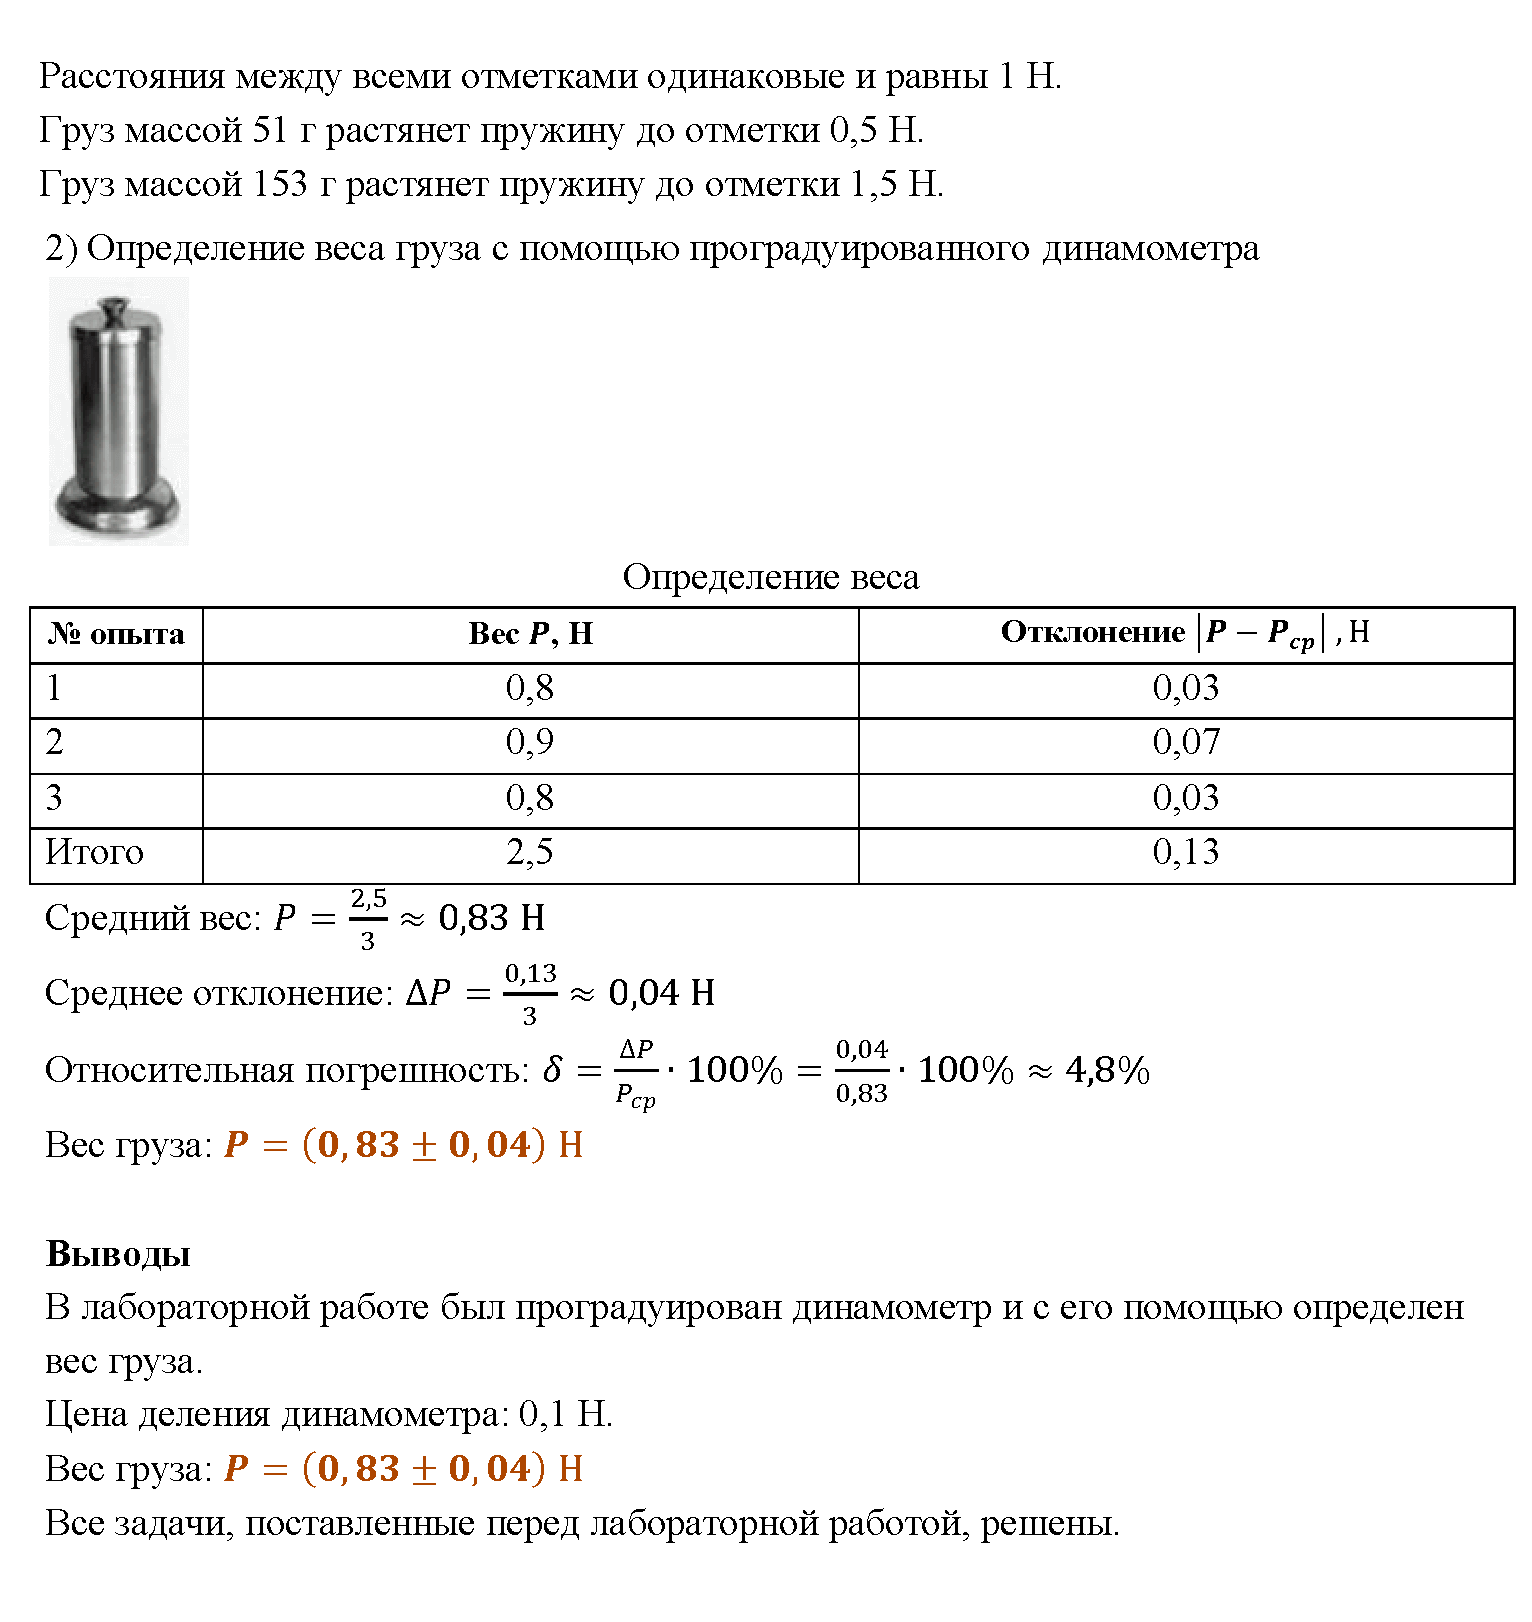 >Физика Перышкин 7 класс Лабораторная работа №11. Определение КПД при подъеме тела по наклонной плоскости